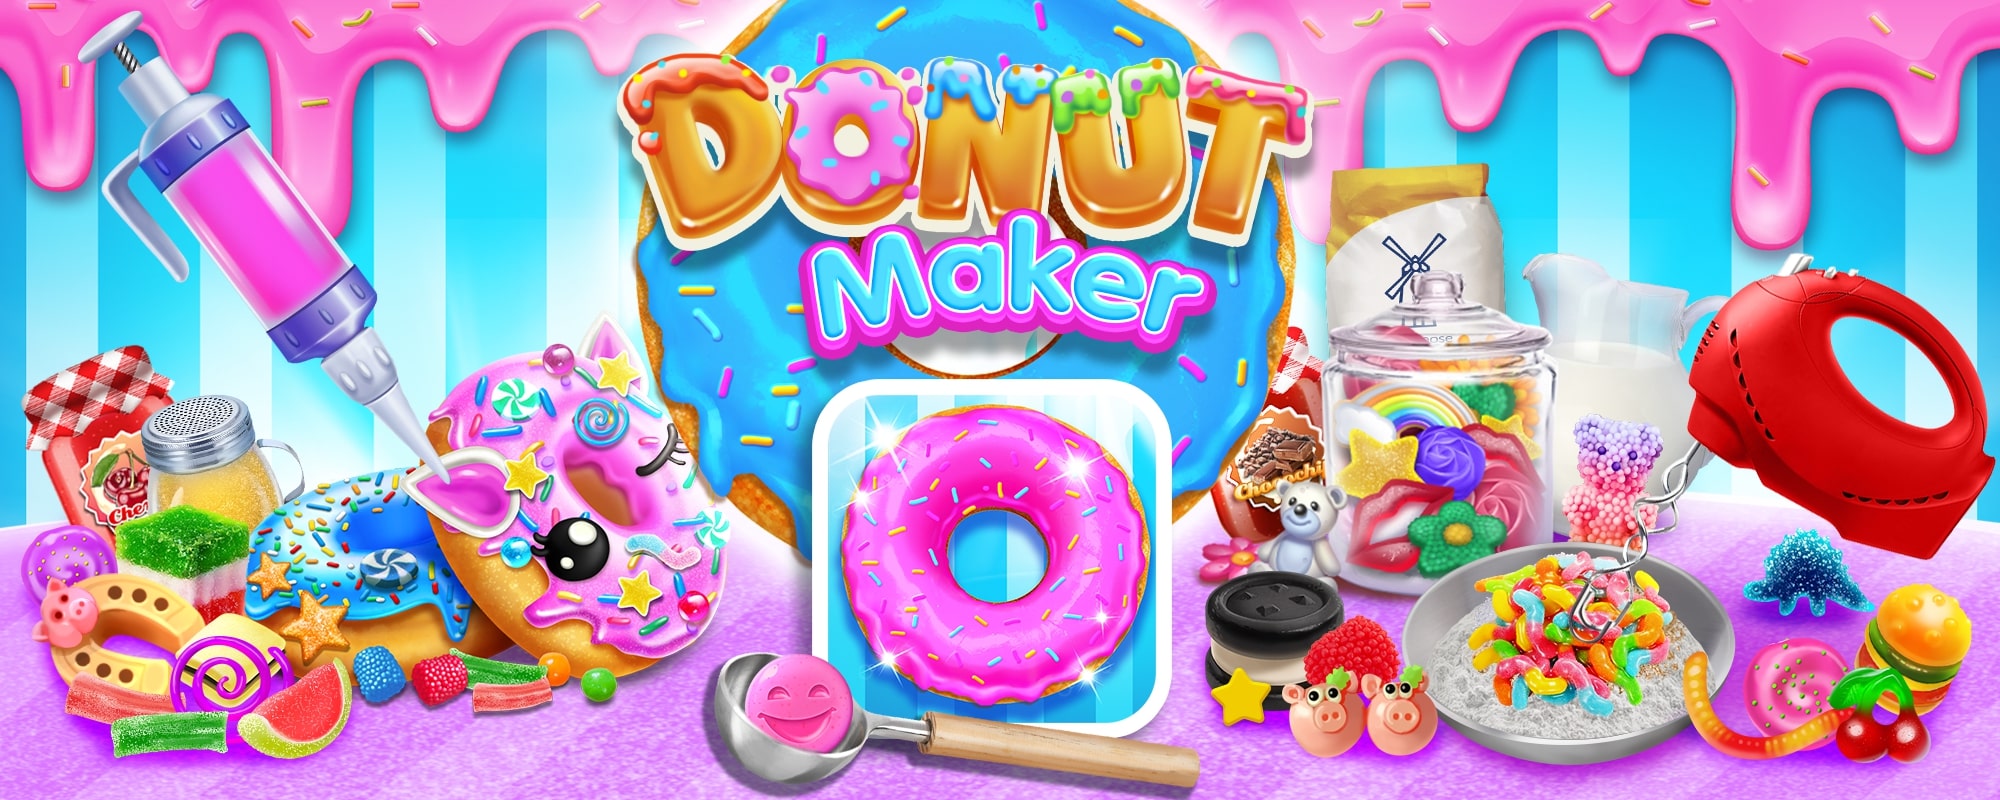 Donut Maker Cooking